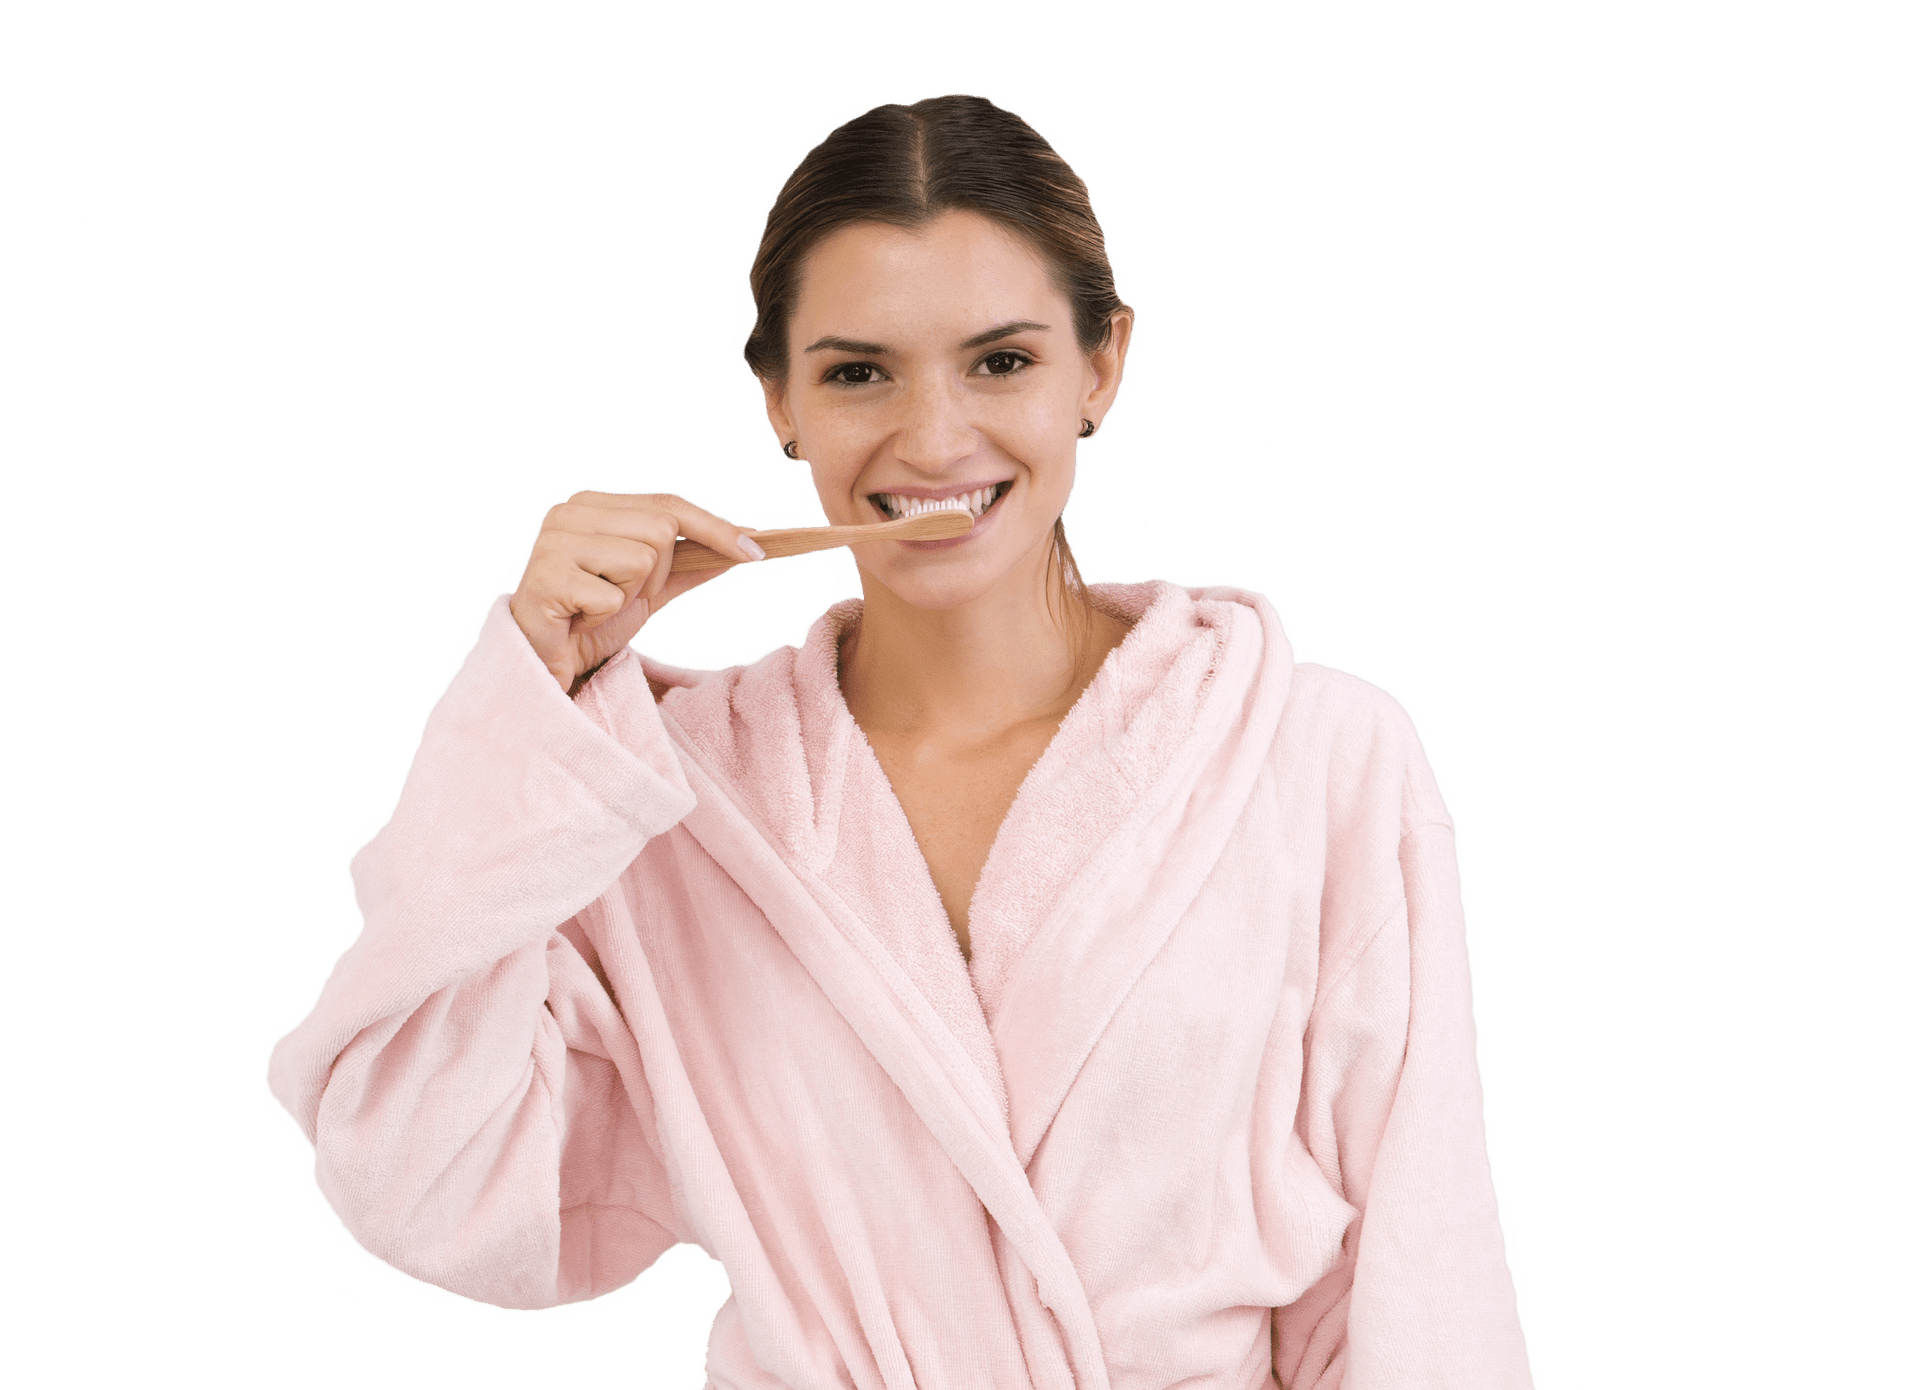 8 Ways to Get Rid of Gum Disease